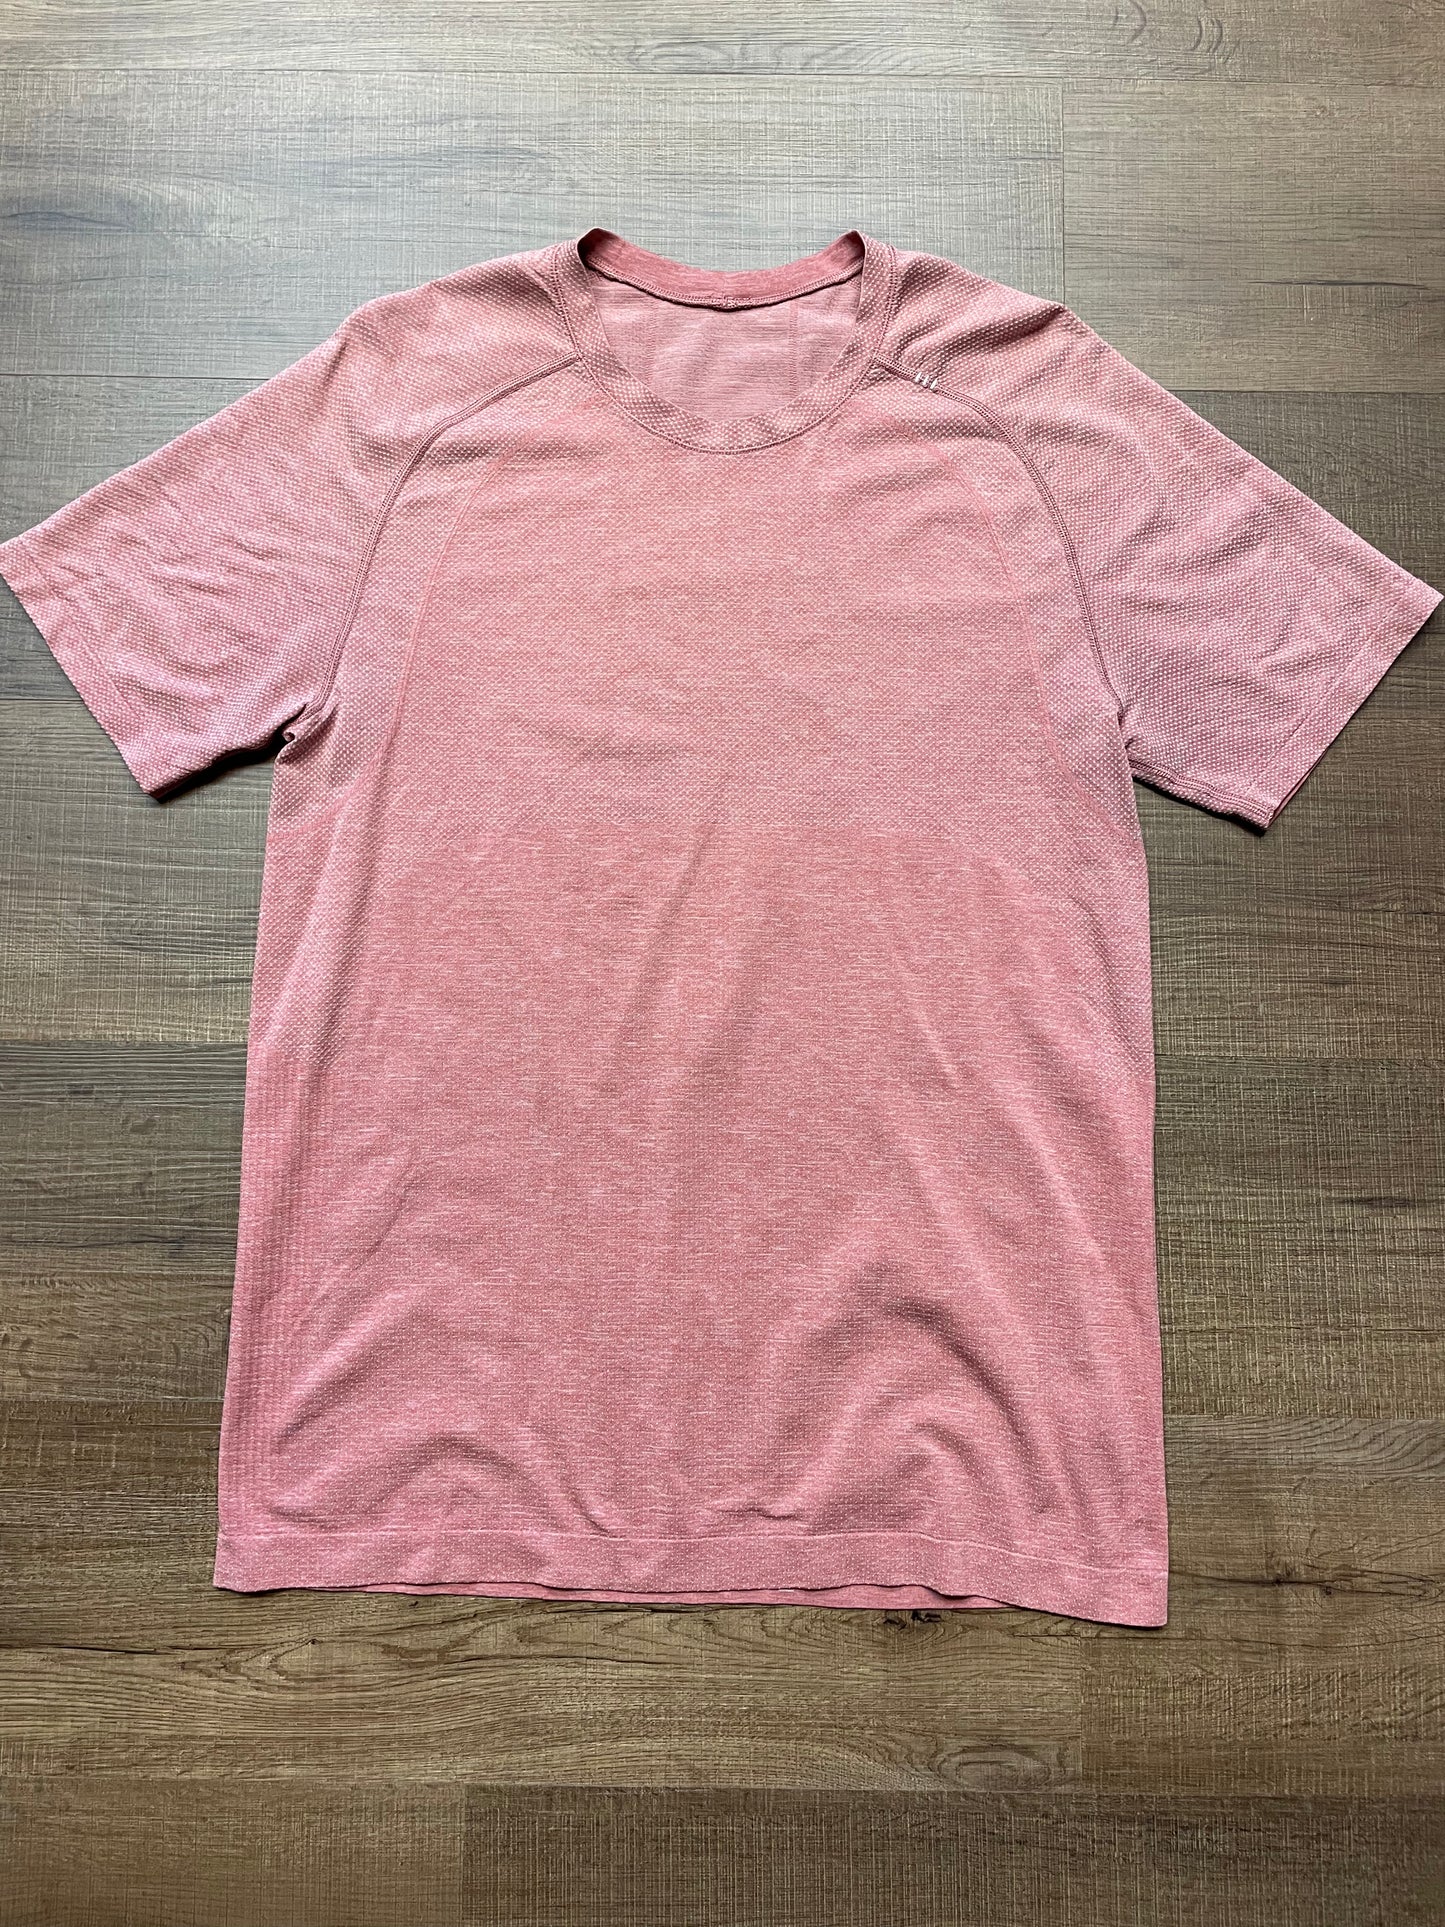 Lululemon Men's Metal Vent Tech Short Sleeved Shirt Pink (M)